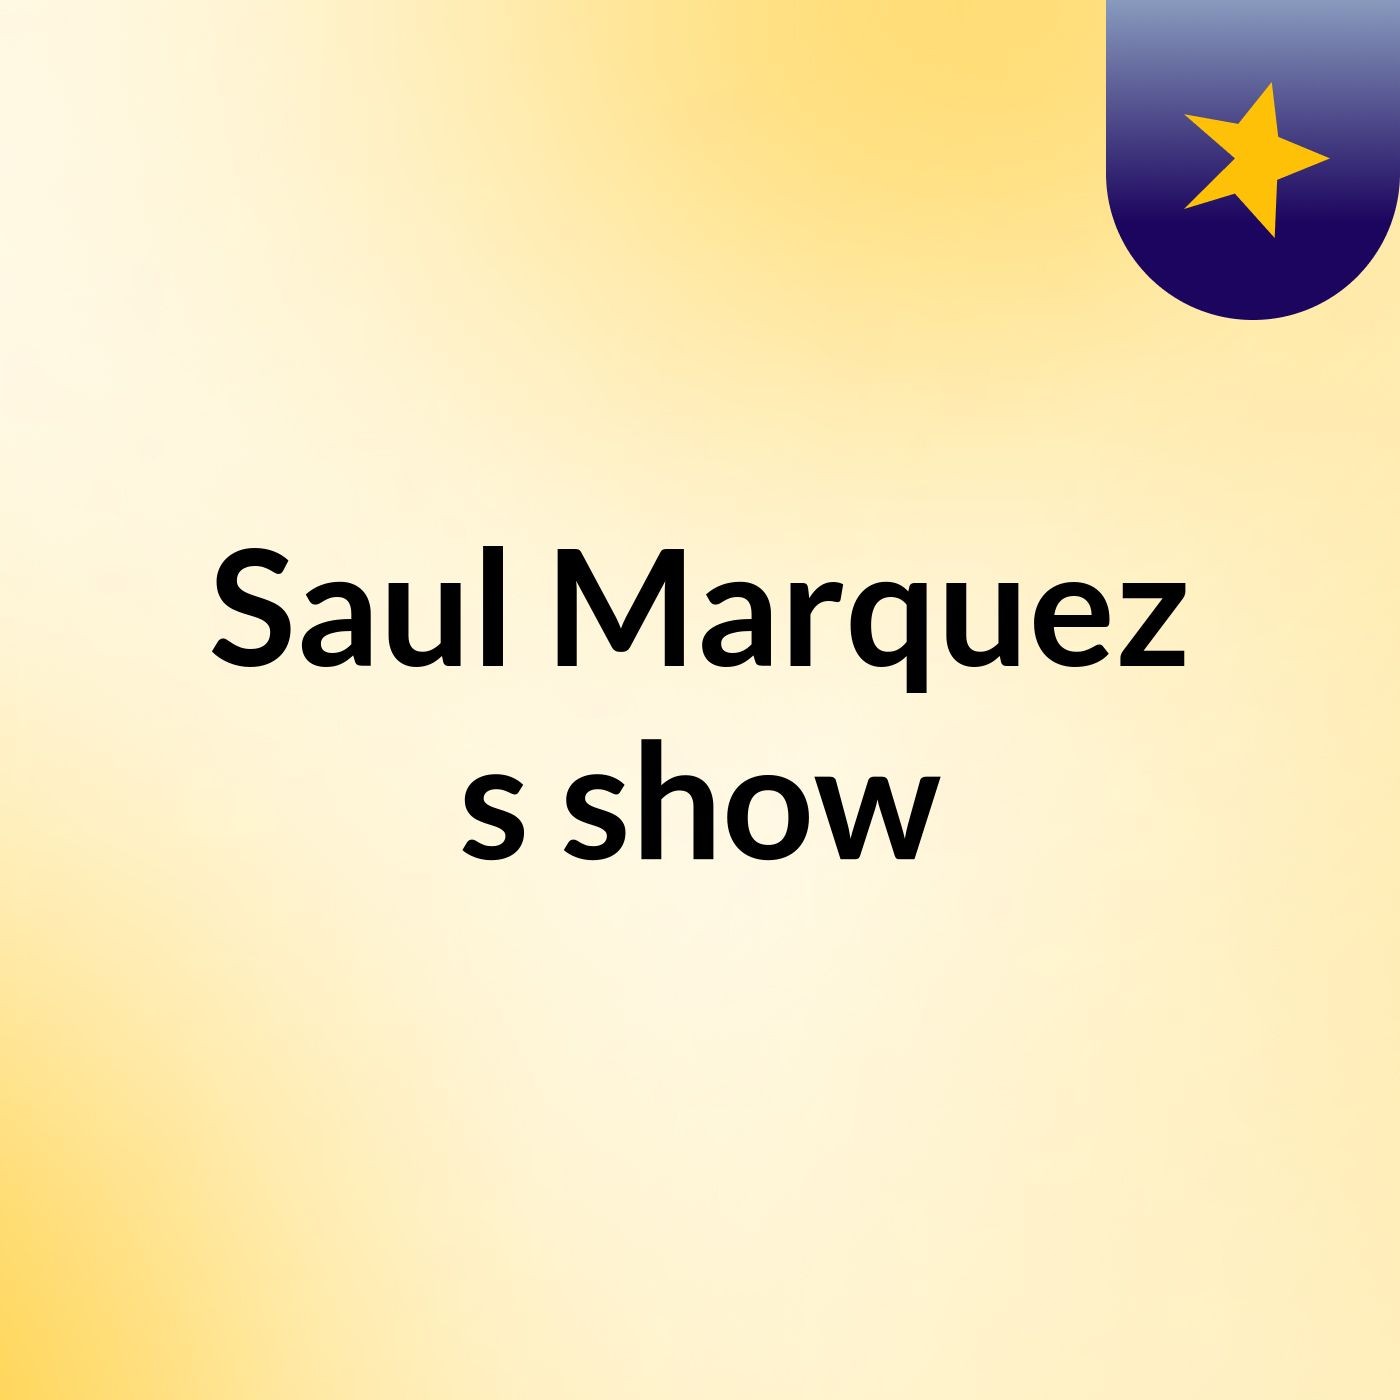 Saul Marquez's show